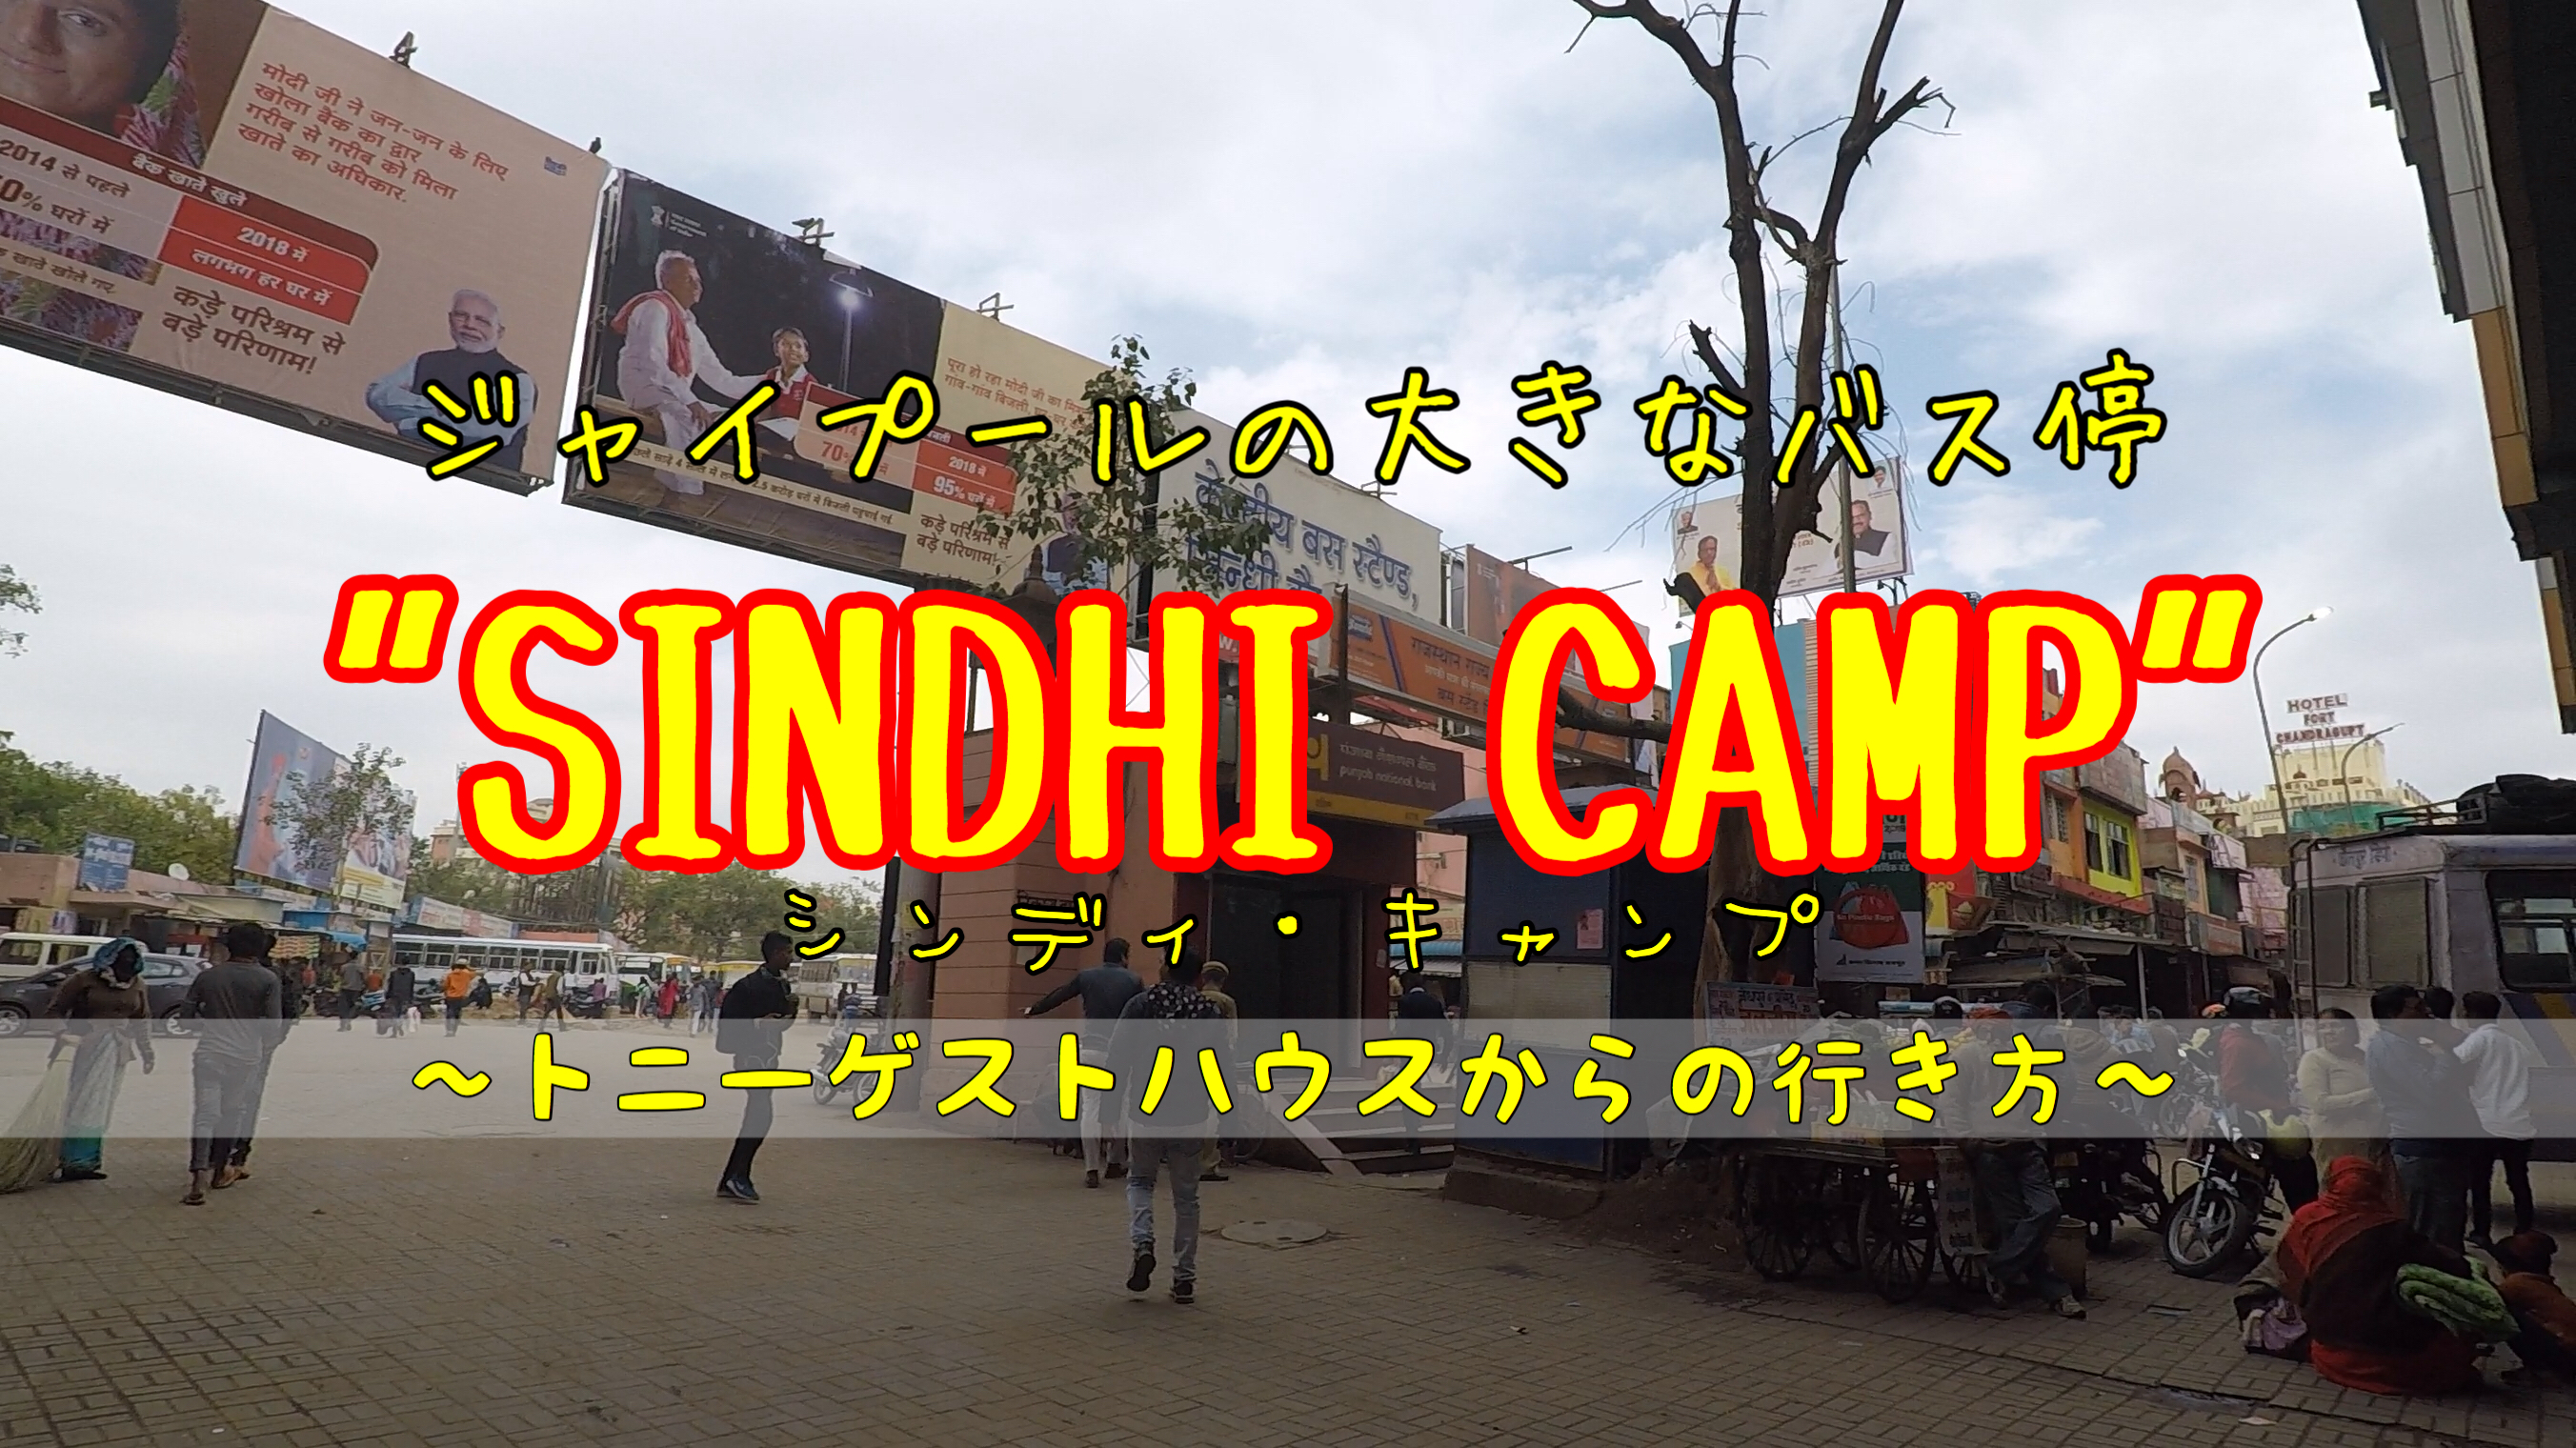 トニーゲストハウスからバス停”SINDHI CANP”(シンディ・キャンプ)への行き方